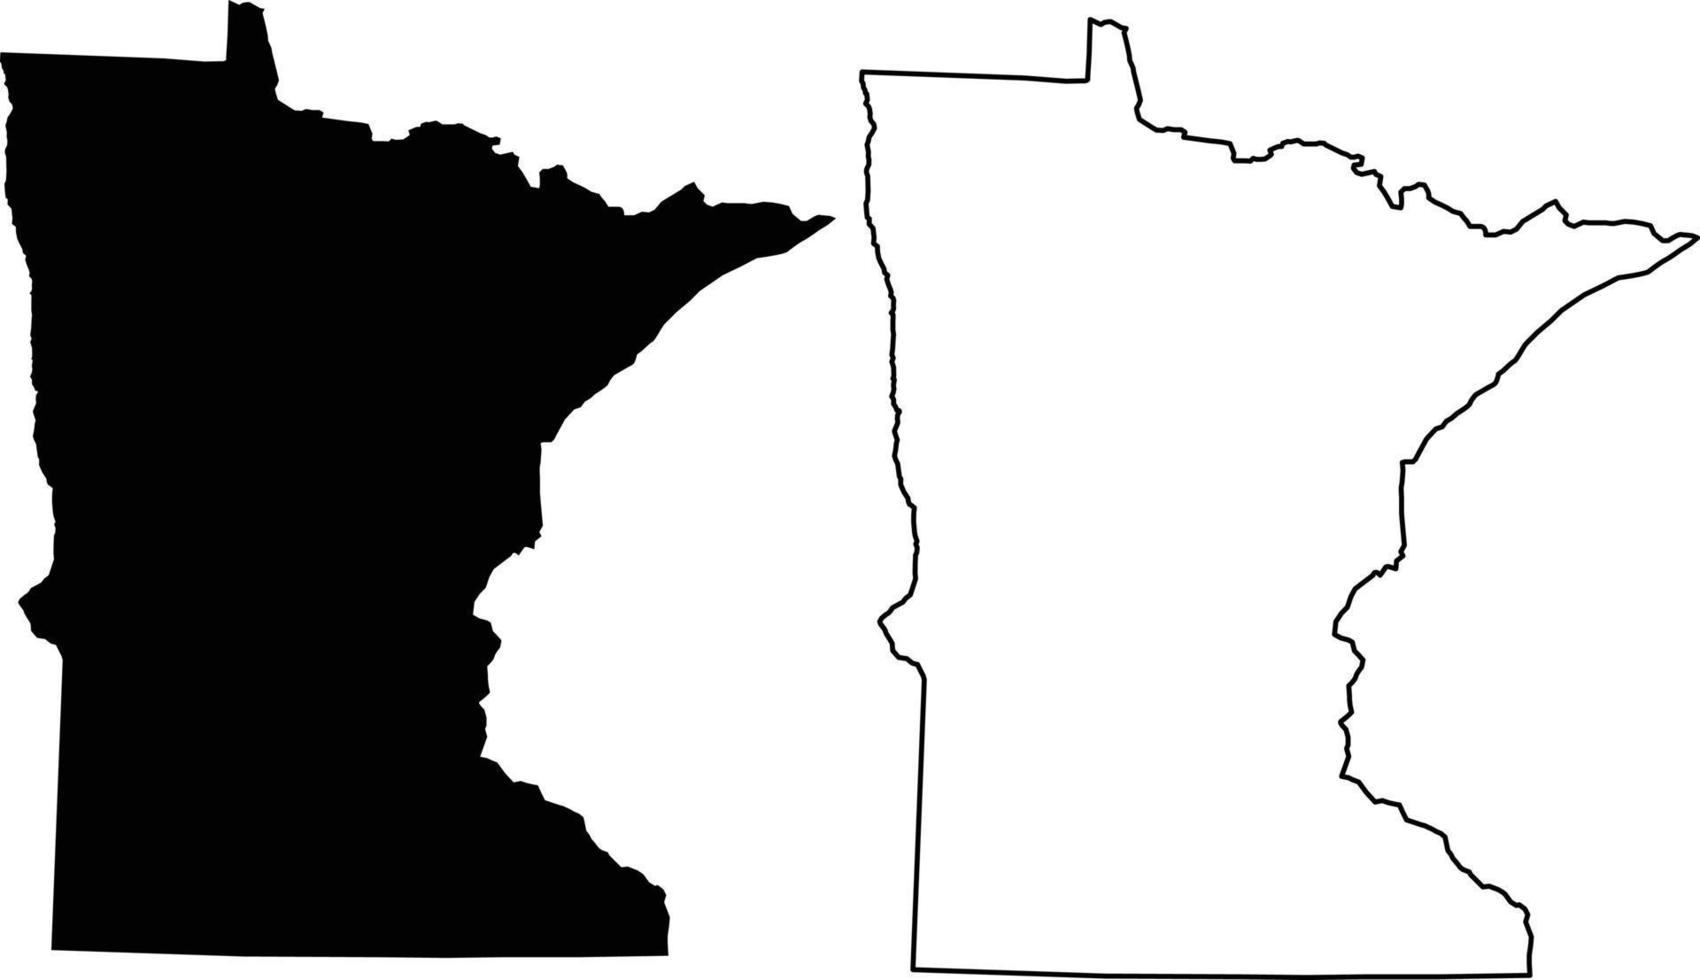 mapa de minnesota sobre fondo blanco. mapa del estado estadounidense de minnesota. esquema del mapa de minnesota. estilo plano vector